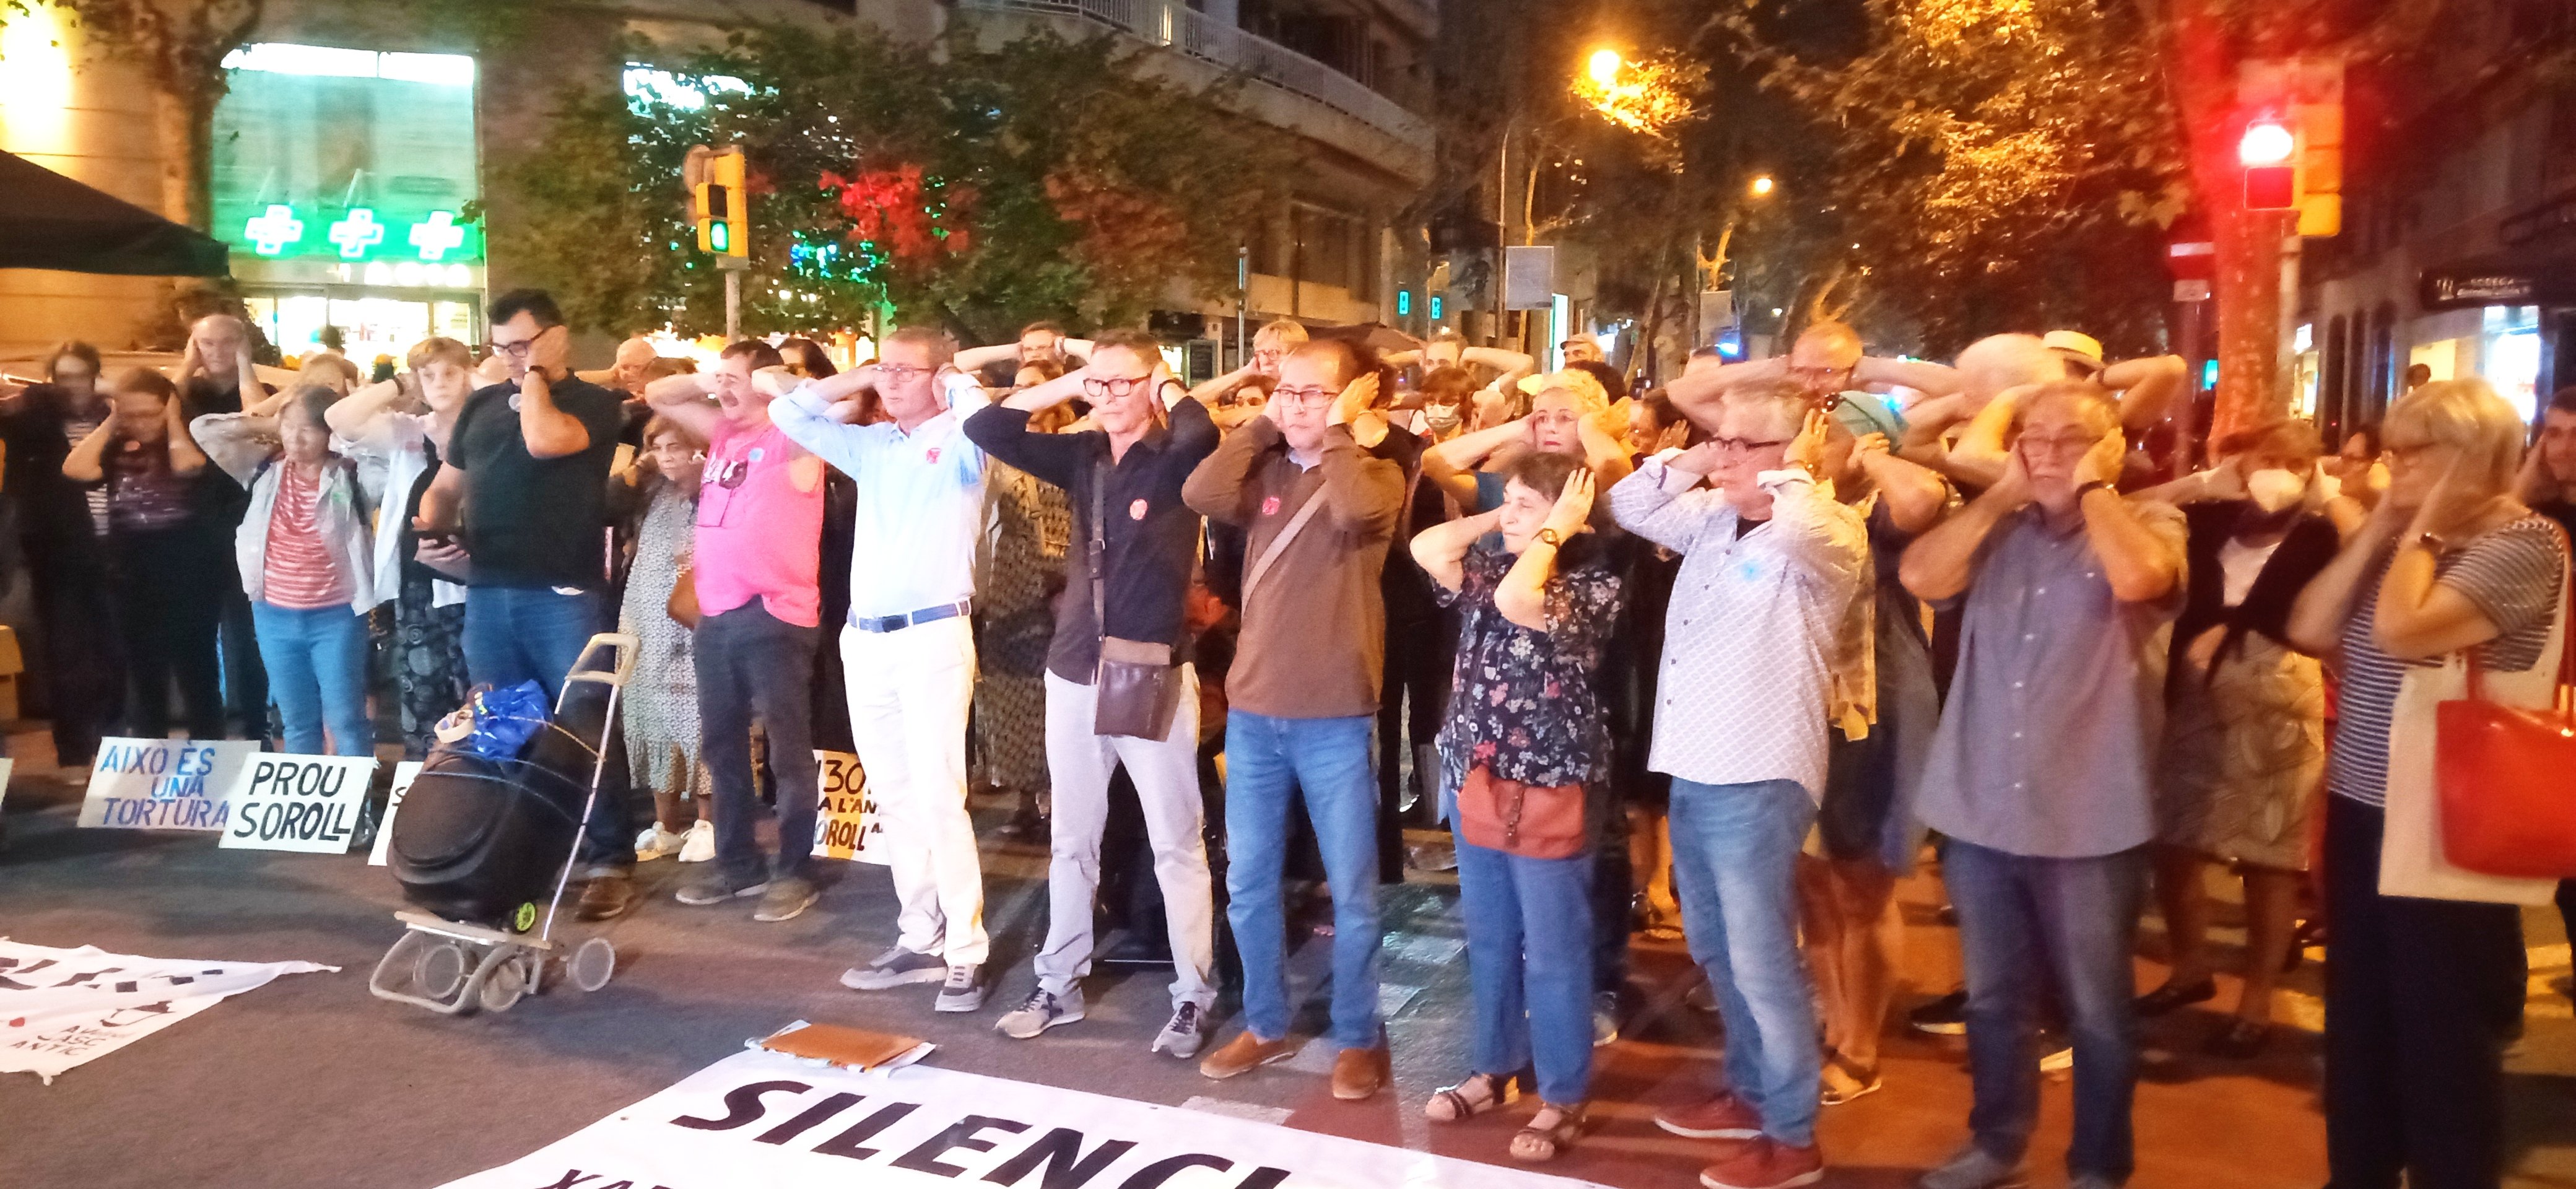 Entitats veïnals de Barcelona convoquen un minut de silenci contra el soroll